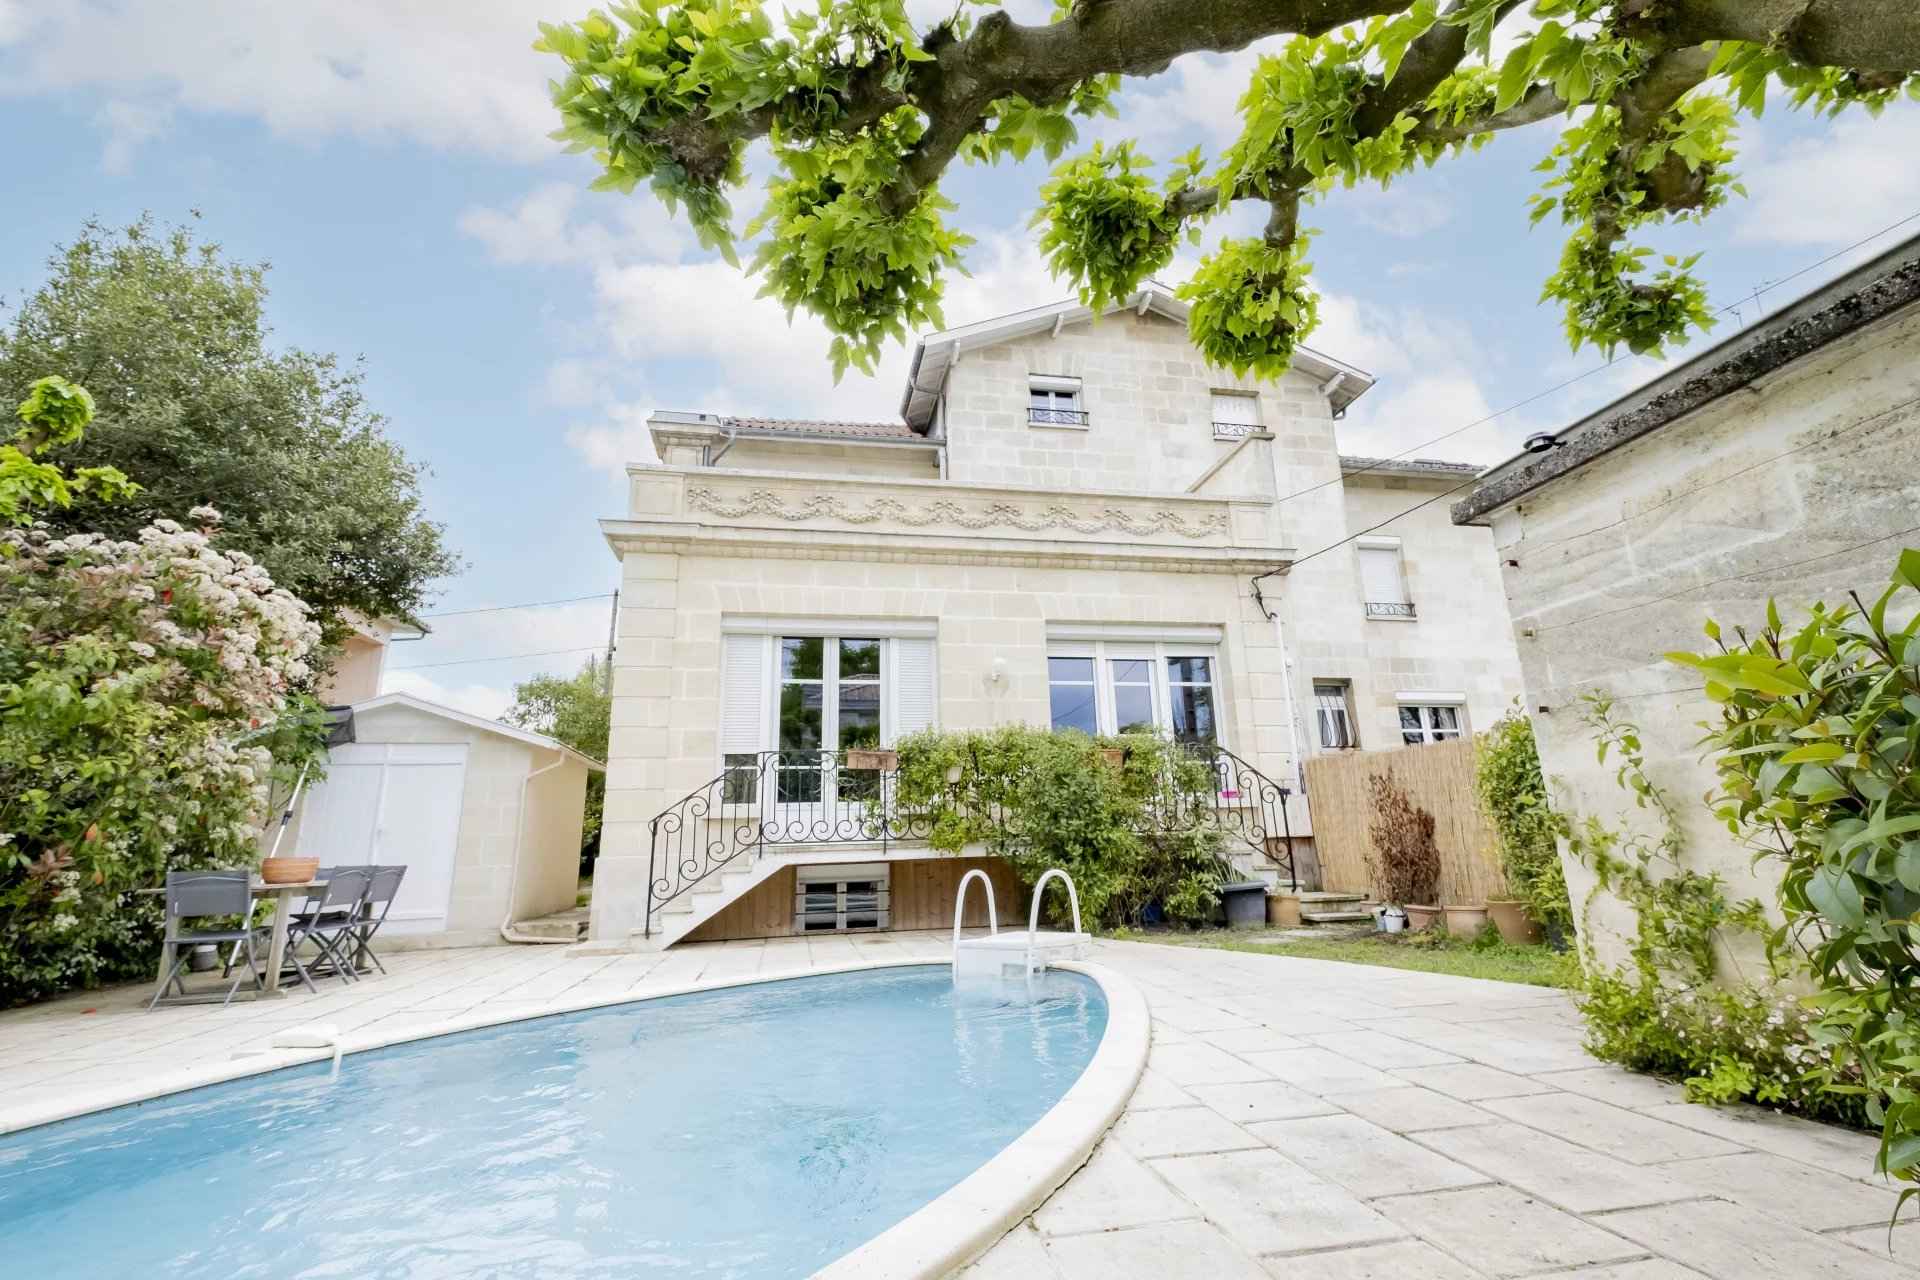 Maison à vendre Bordeaux Caudéran 260 m2 avec piscine